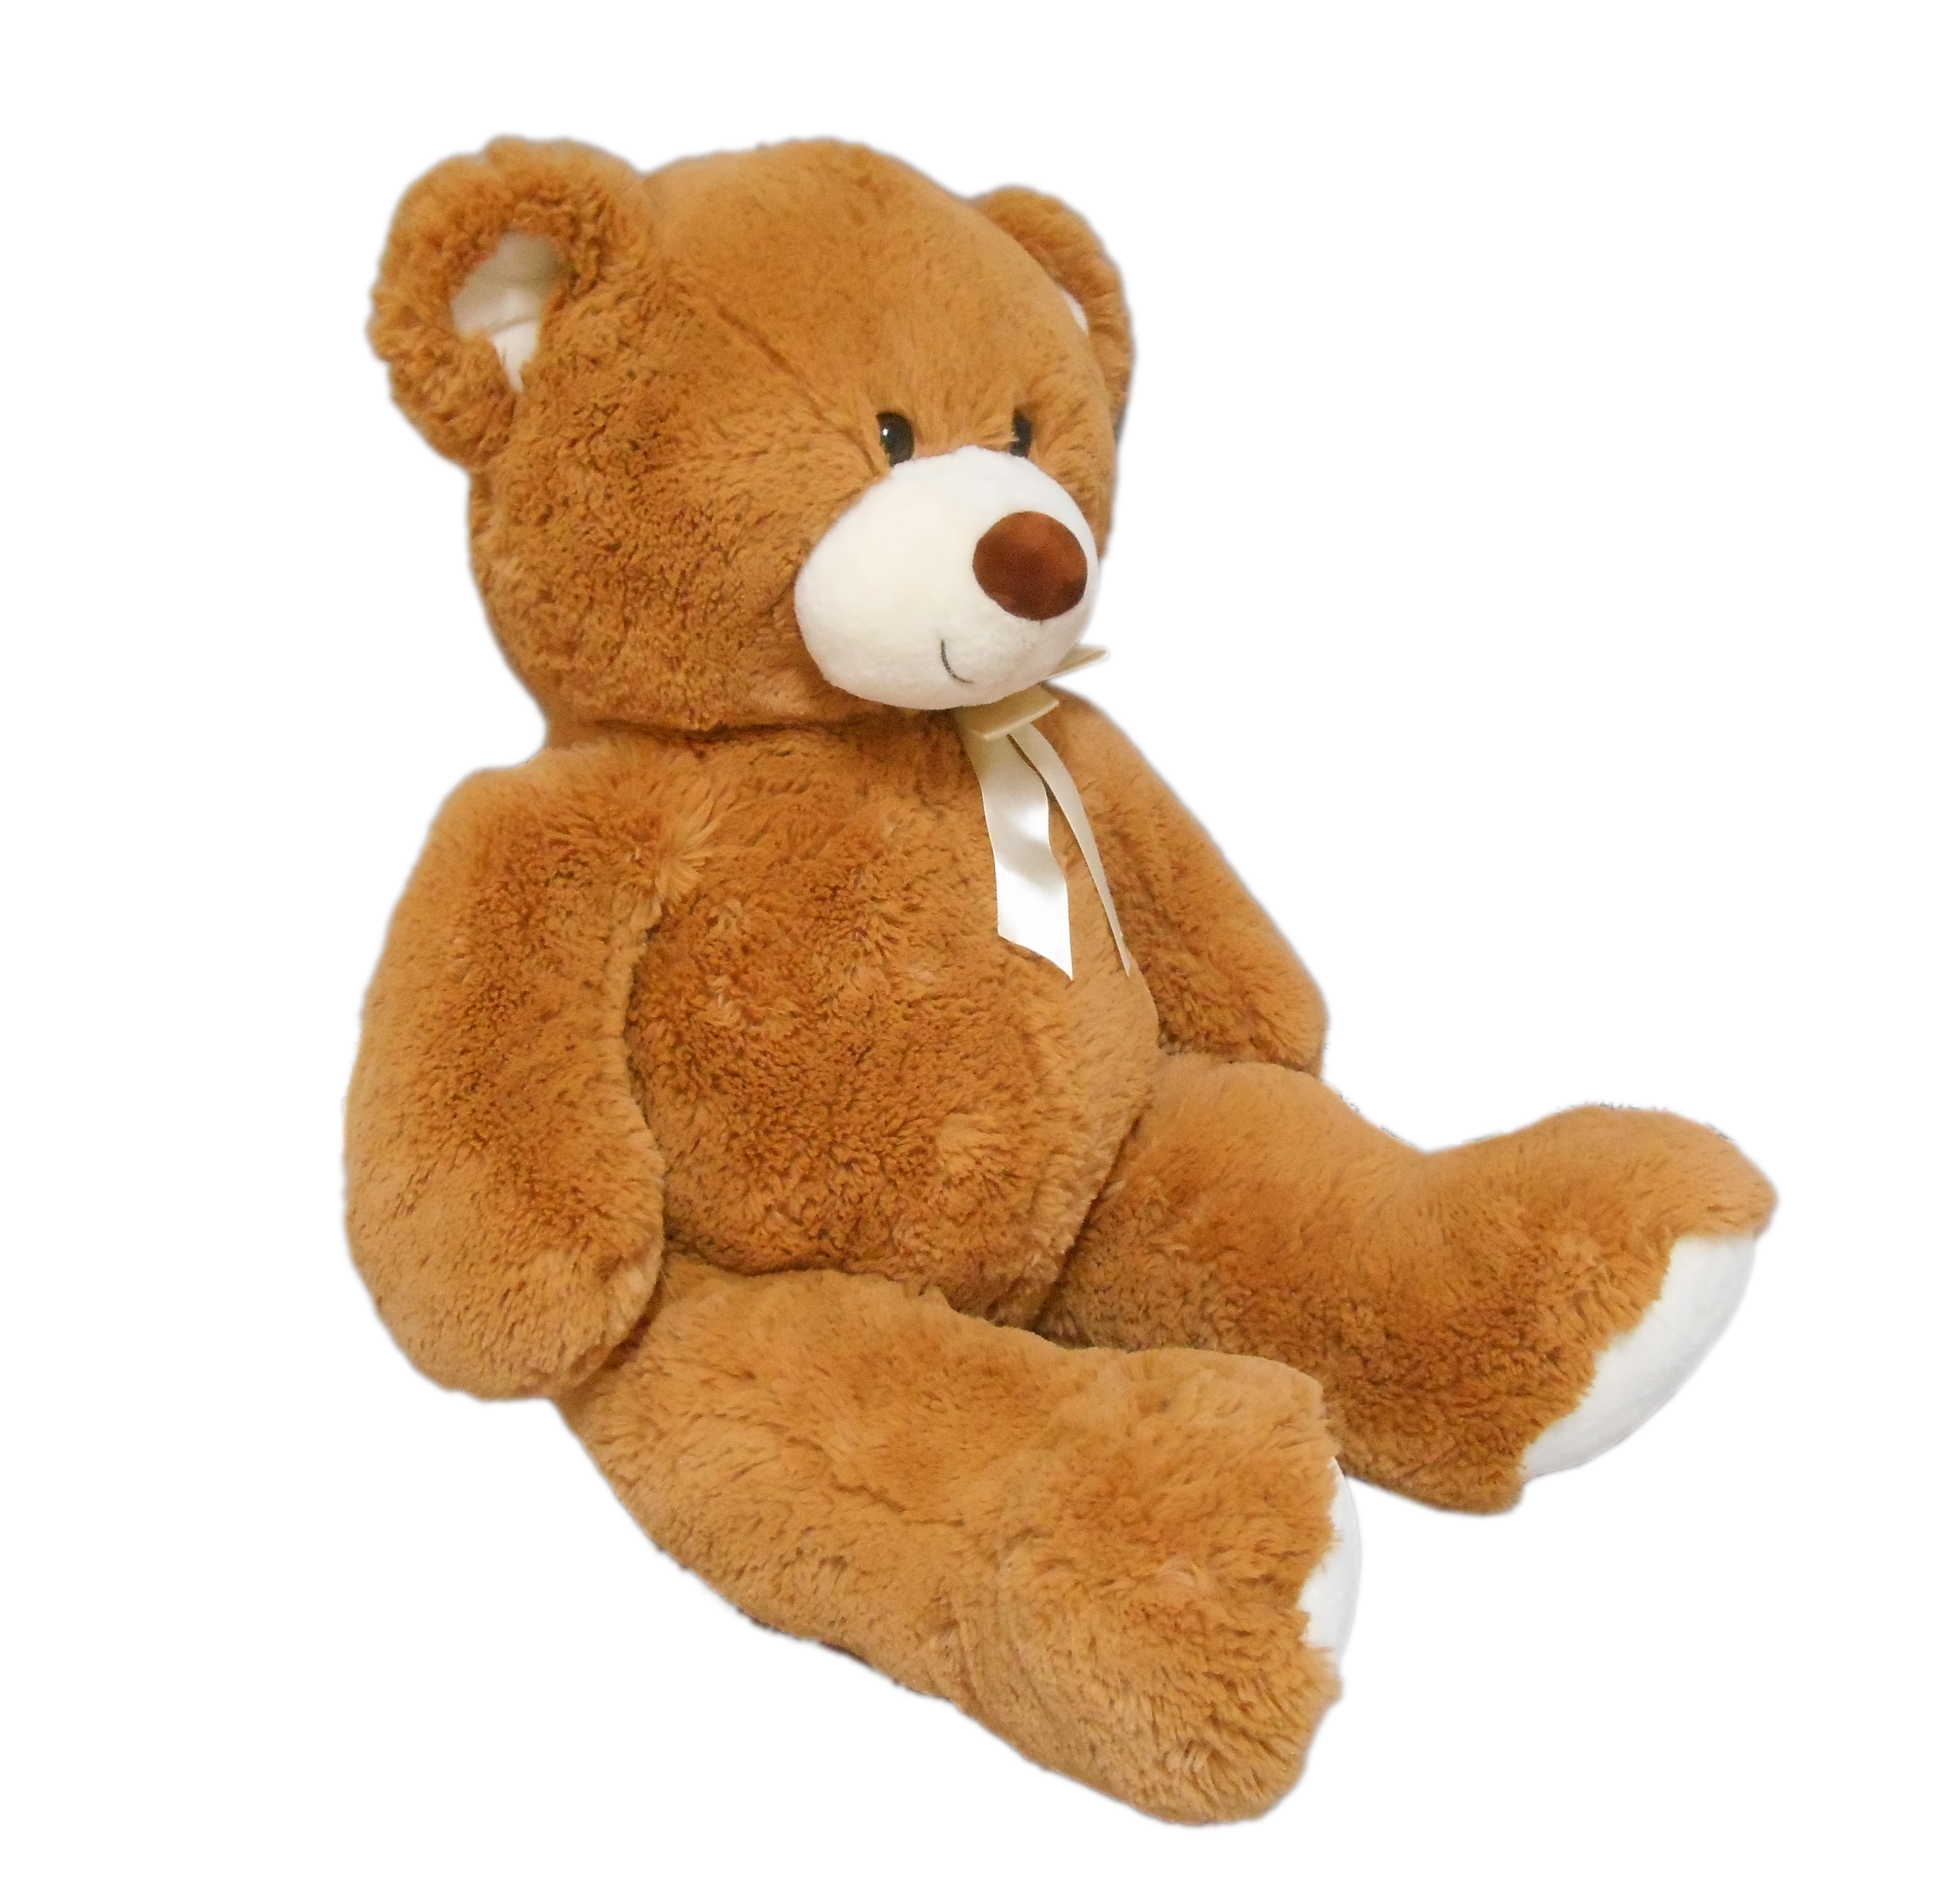 34 inch teddy bear